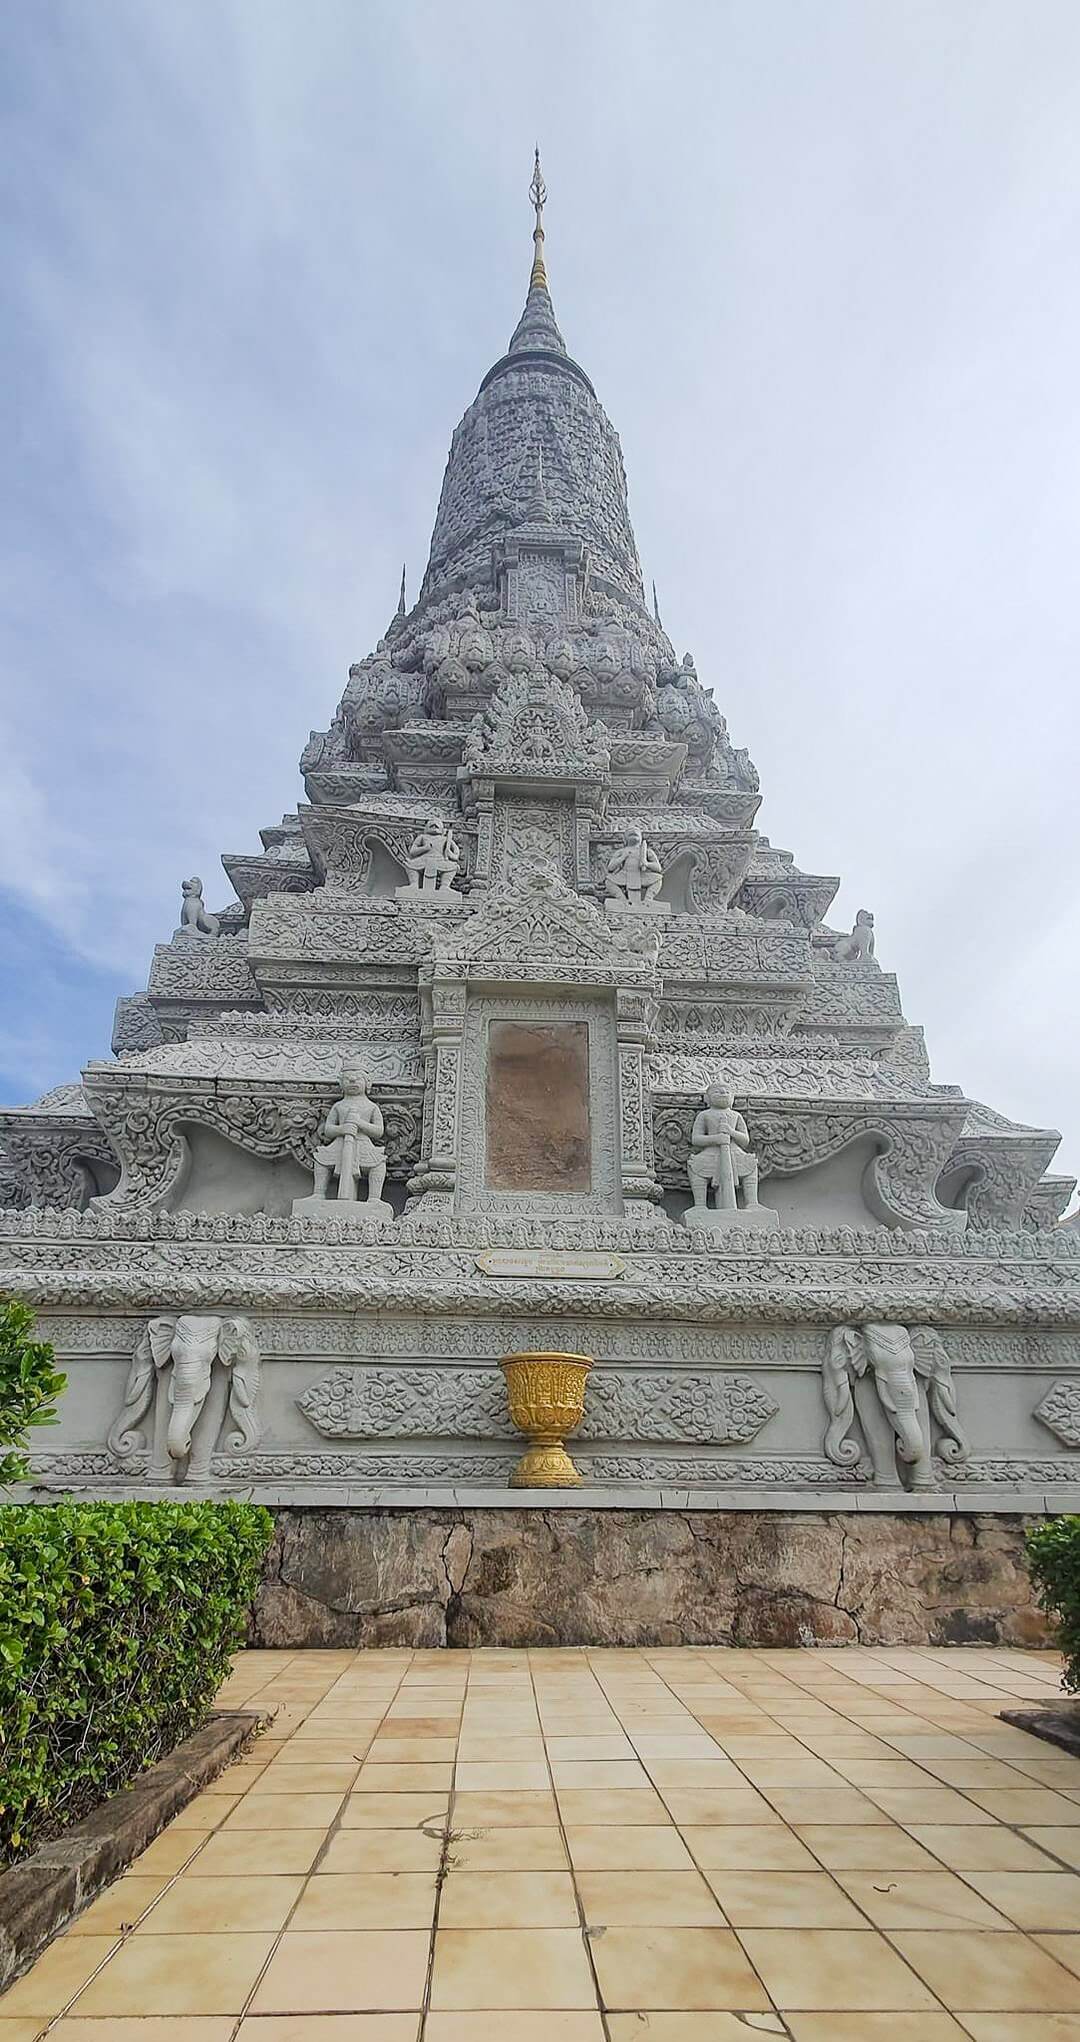 Cambodia-Itinerary-13-Days-Angkor-Wat-Siem-Reap-Silver-Pagoda-Phnom-Penh-3.jpeg